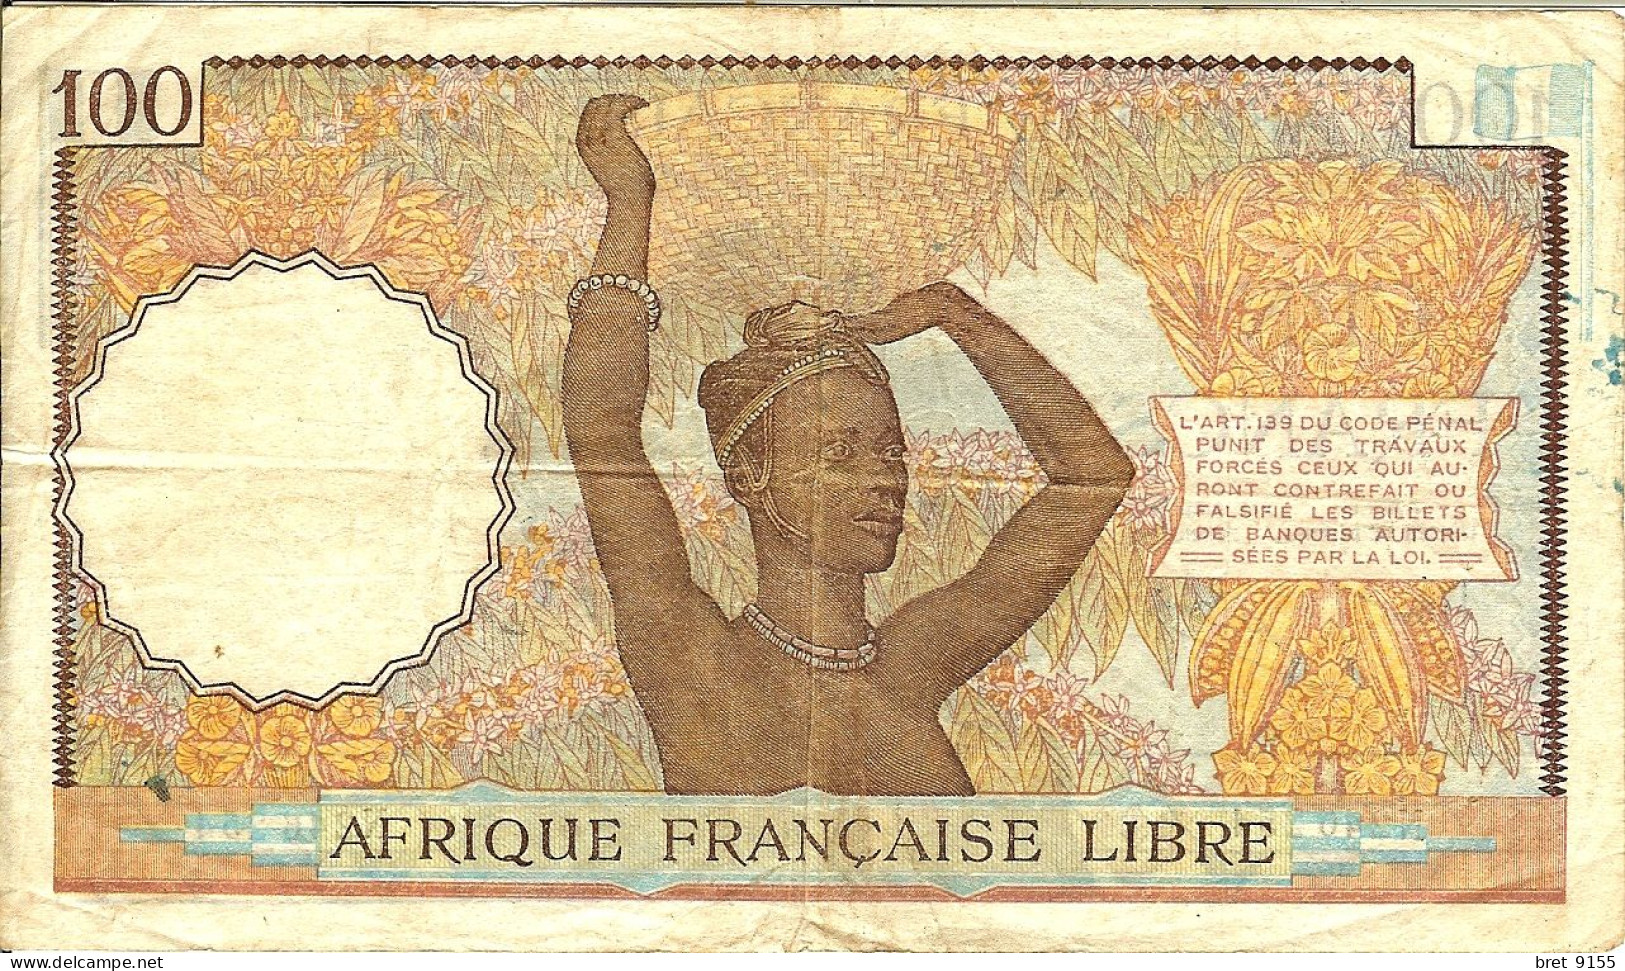 BILLET DE BANQUE AFRIQUE FRANCAISE LIBRE CONGO 100 FRANCS 1941 SERIE N246254 - Sudafrica